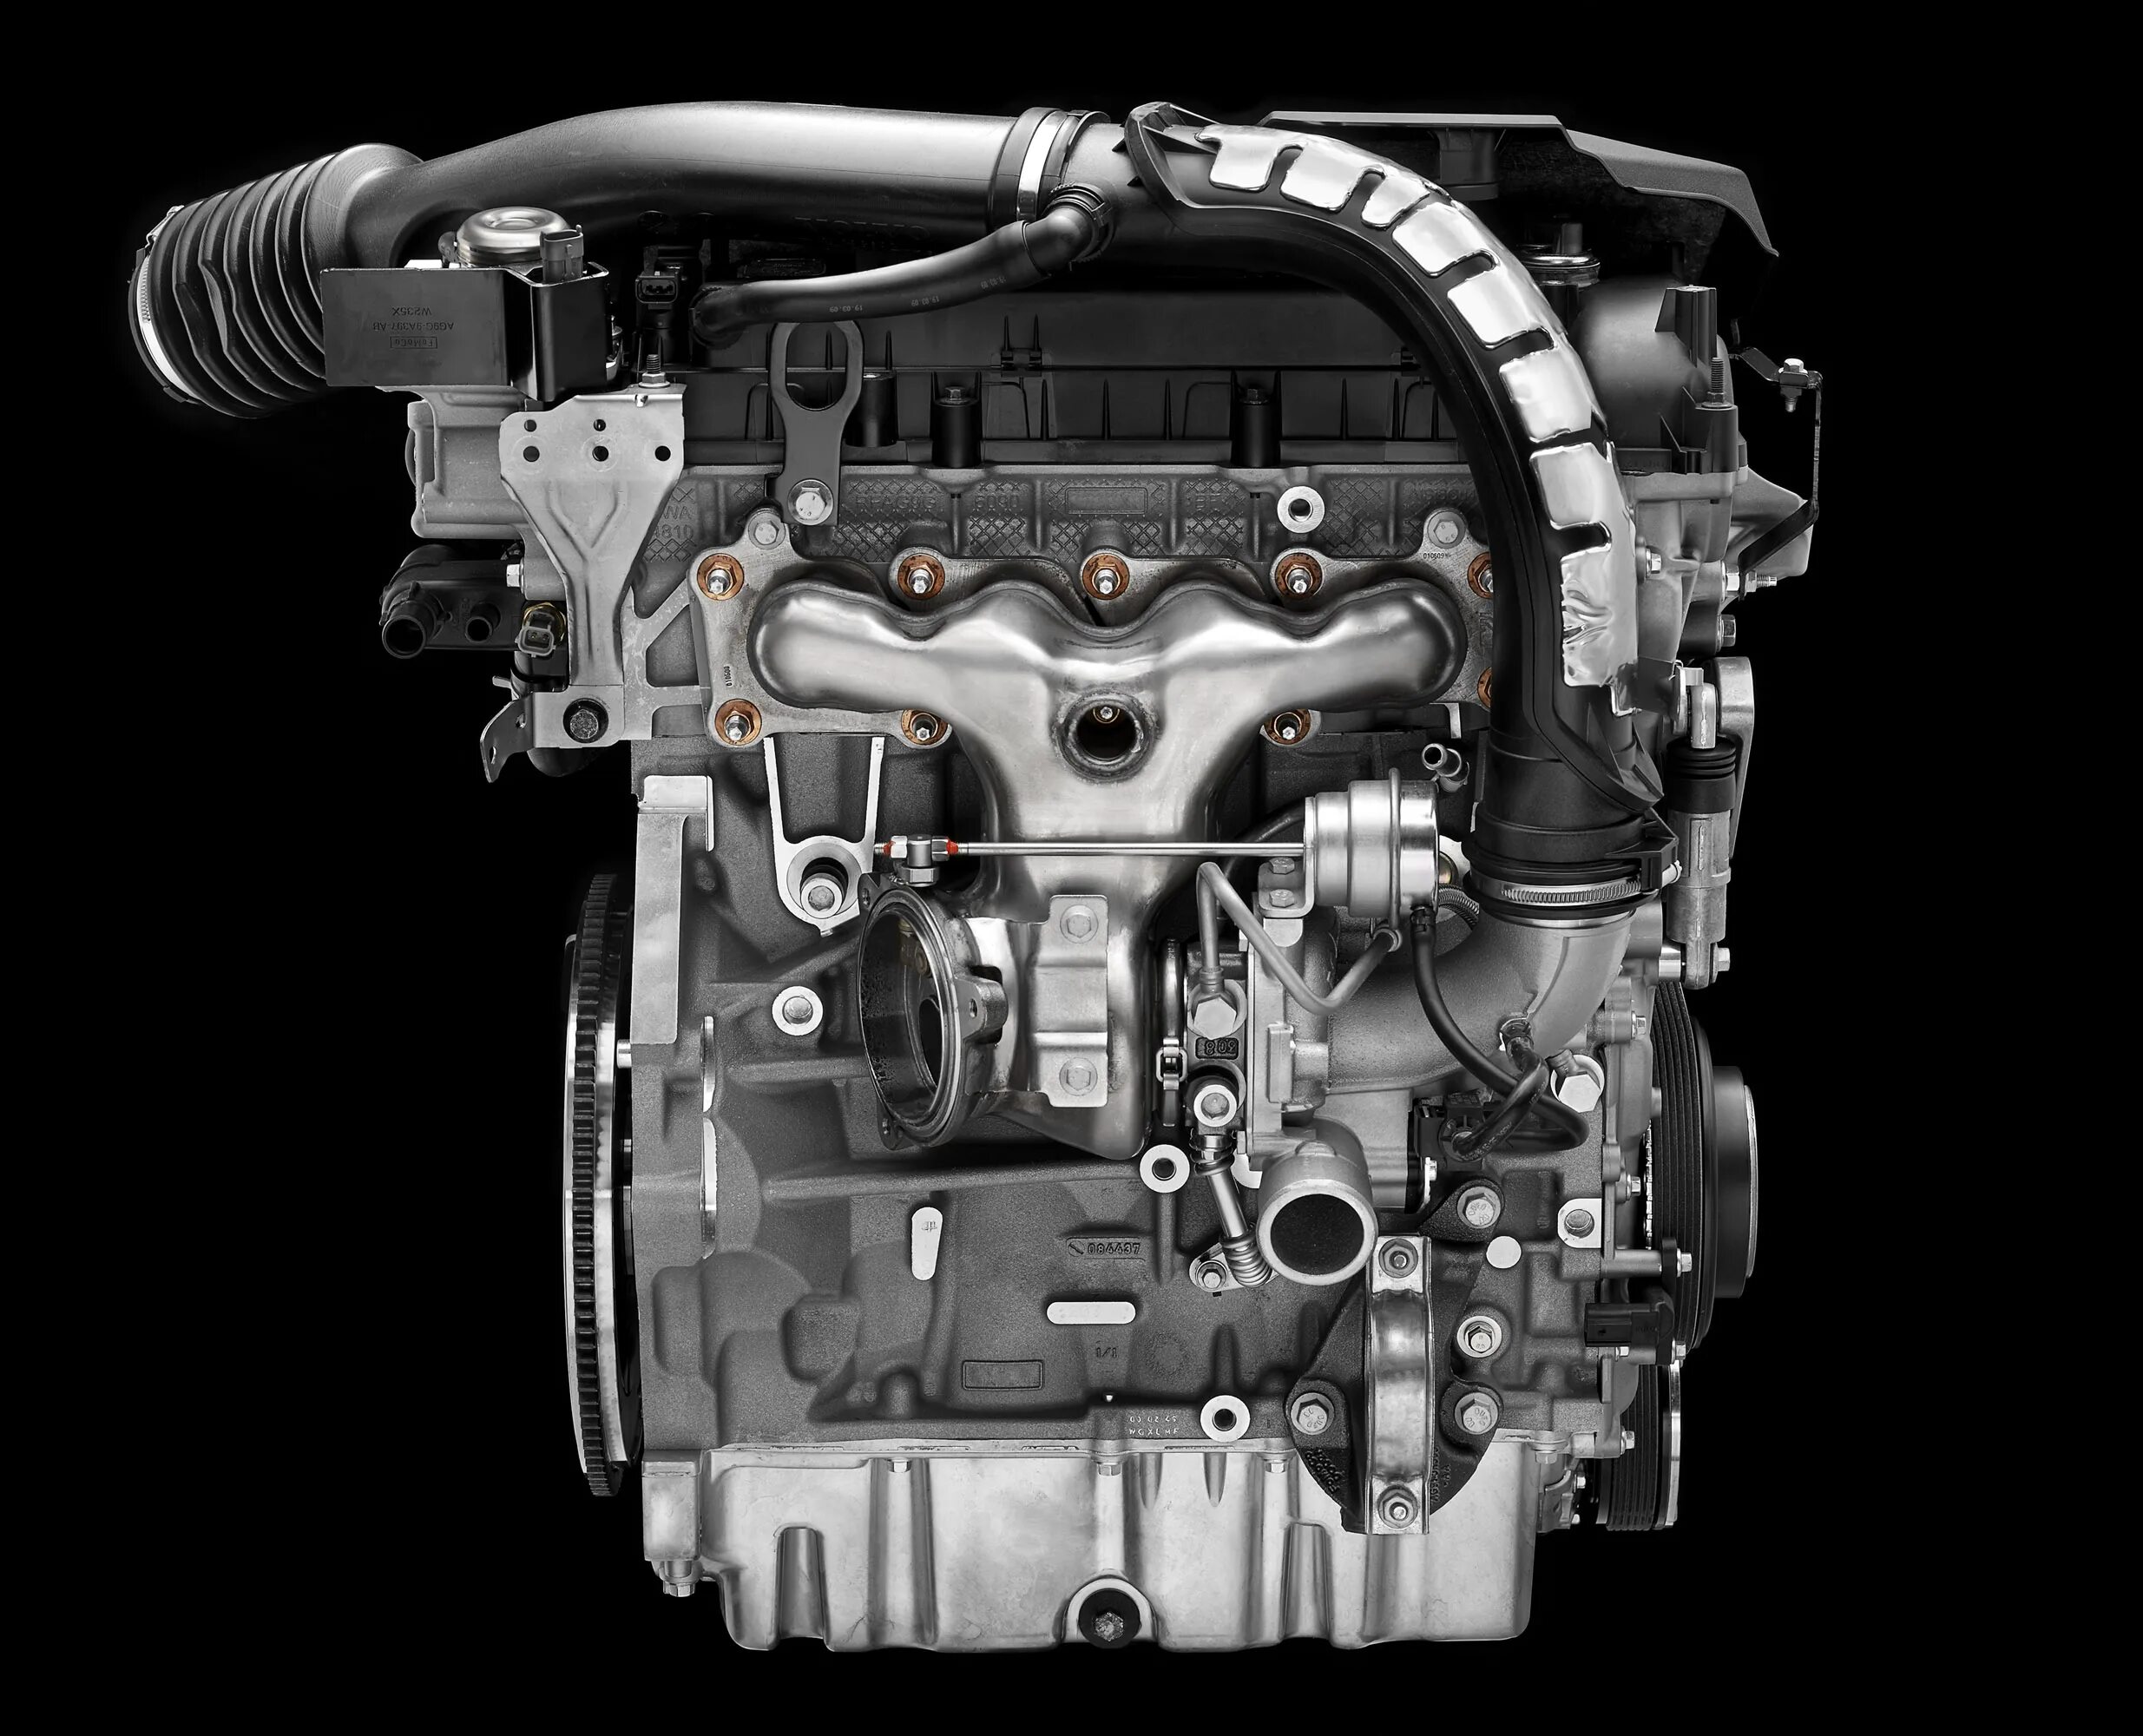 Volvo s60 двигатели. Volvo s60 2.4 d5 двигатель. Мотор Вольво 3.2. Volvo xc60 двигатель. Volvo s60 ECOBOOST 2.0.